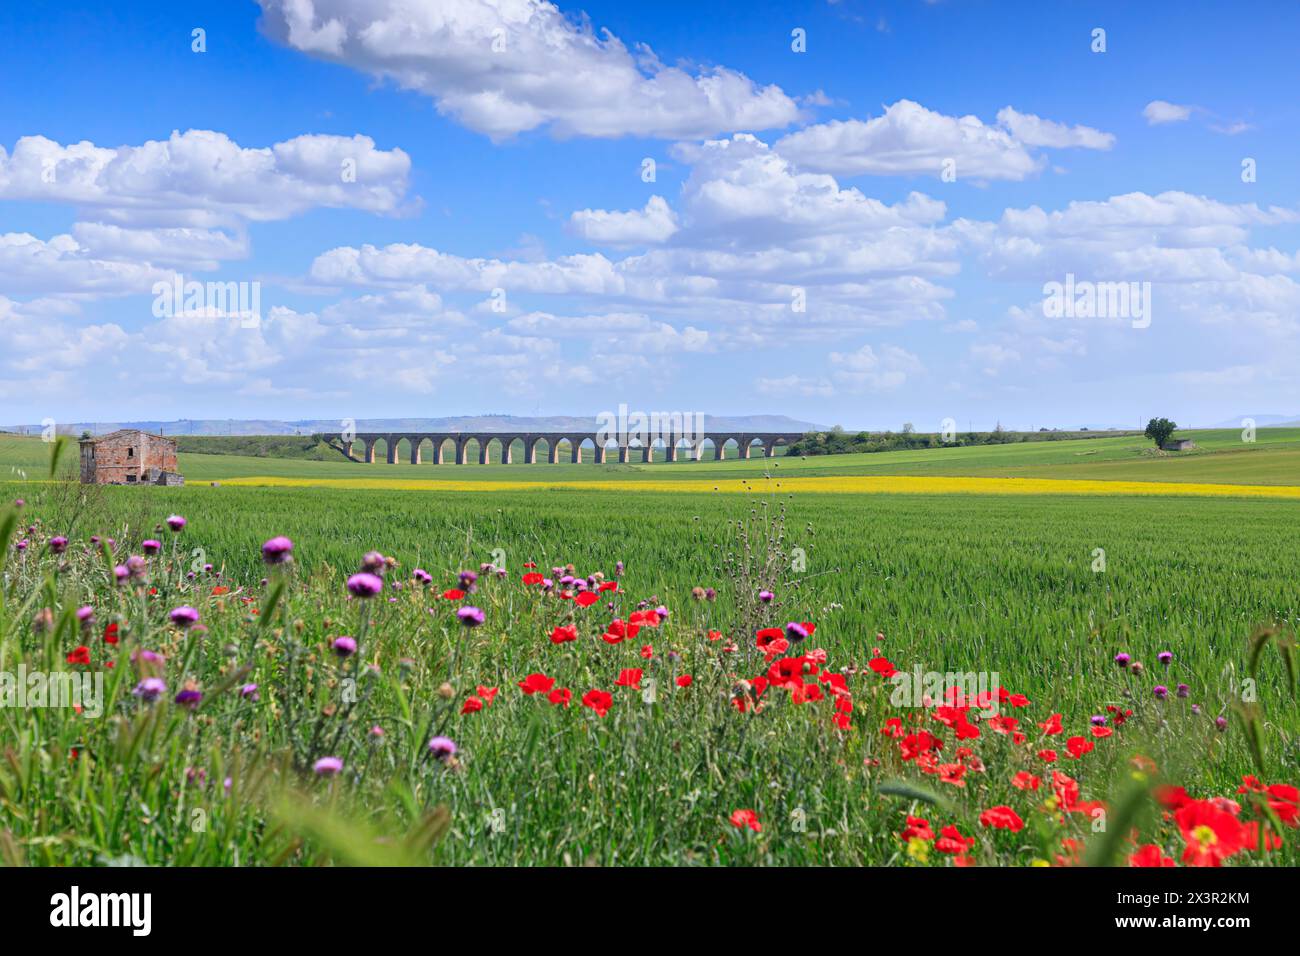 Primavera: Paesaggio collinare con verdi campi di grano e viadotto. Vista del Ponte dei 21 archi, il ponte ferroviario fantasma vicino alla città di Spinazzola. Foto Stock